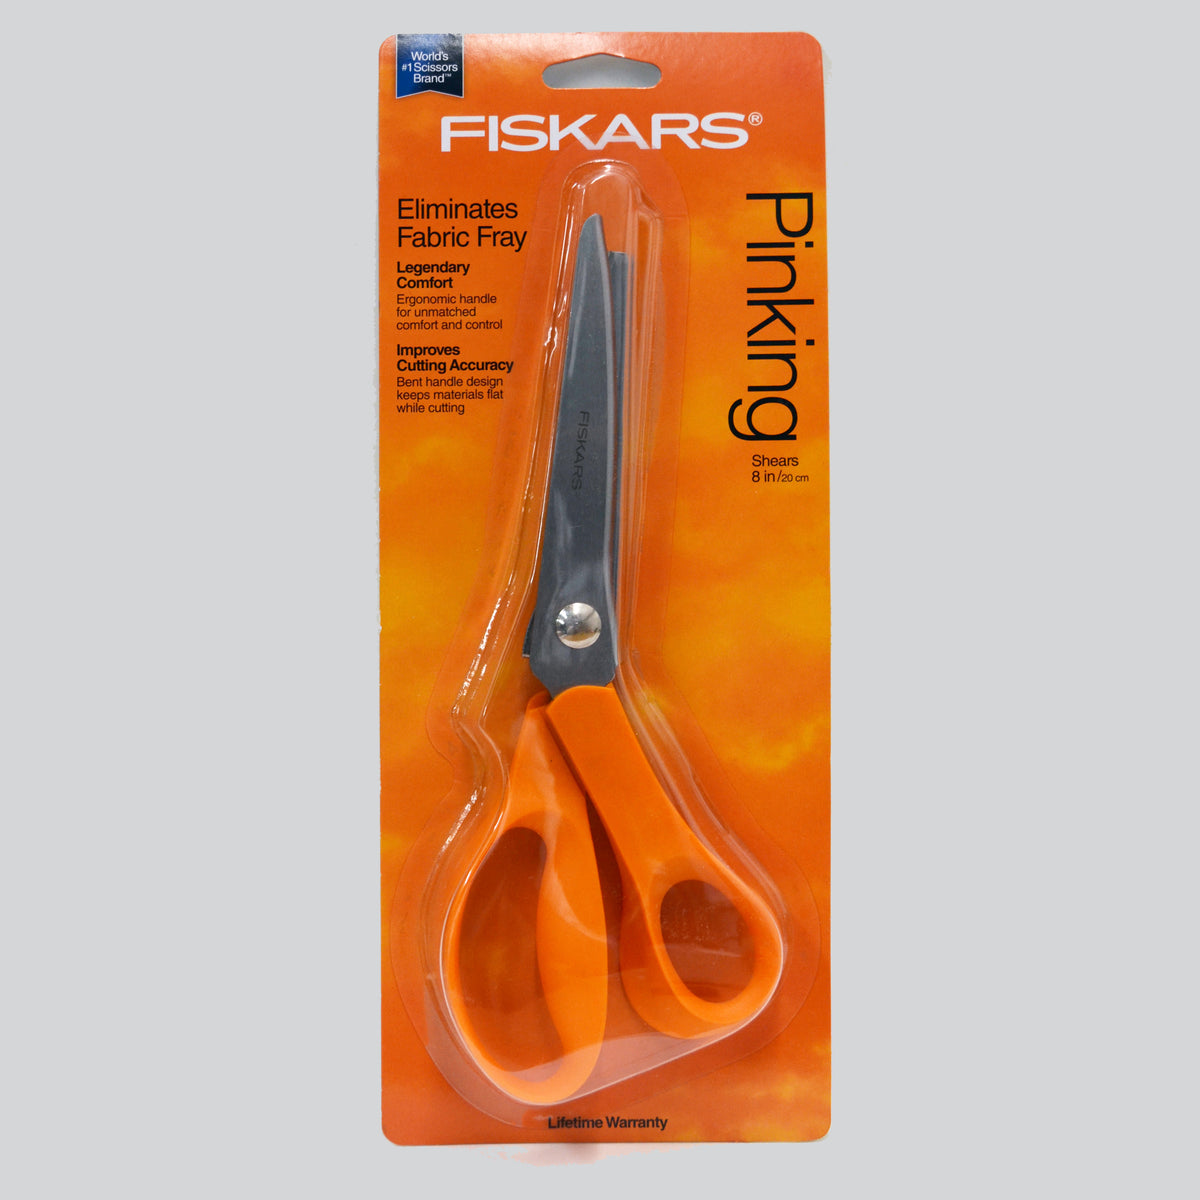  Fiskars Scissors - Pinking